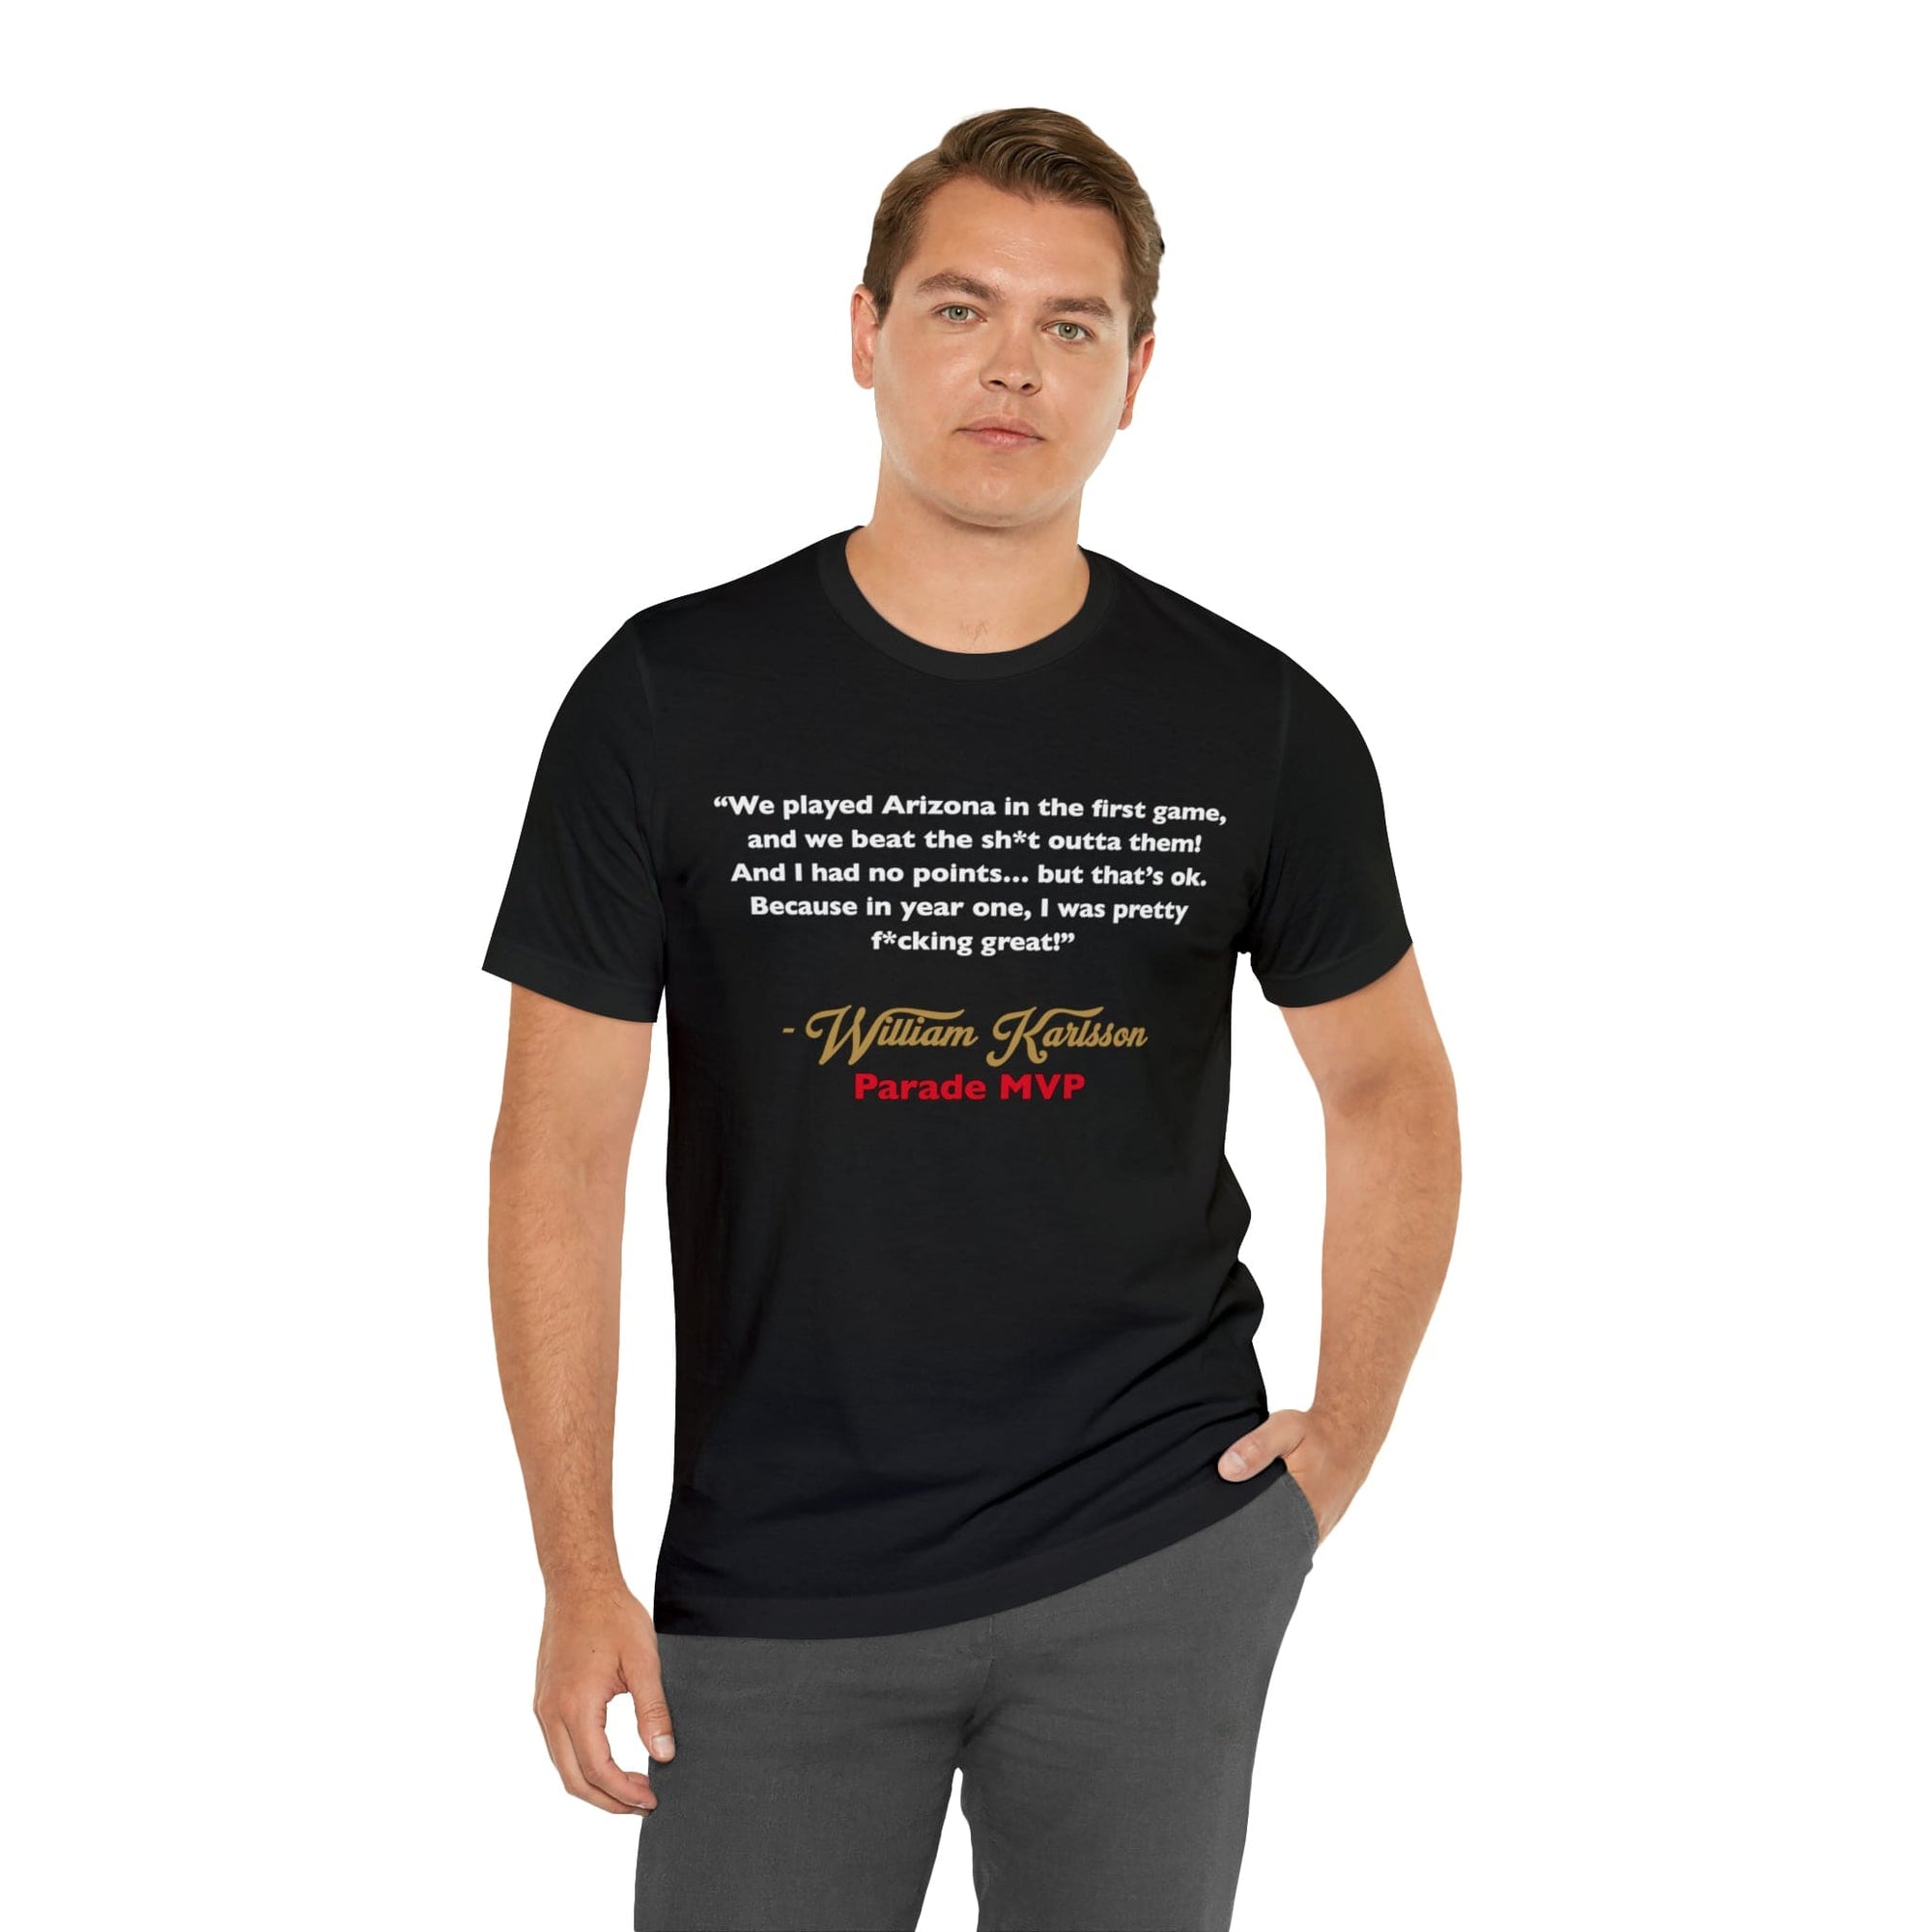 https://vegassportsshop.com/cdn/shop/files/william-karlsson-parade-mvp-speech-quote-vegas-golden-knights-unisex-t-shirt-t-shirt-53541766889700_2000x.jpg?v=1687202595